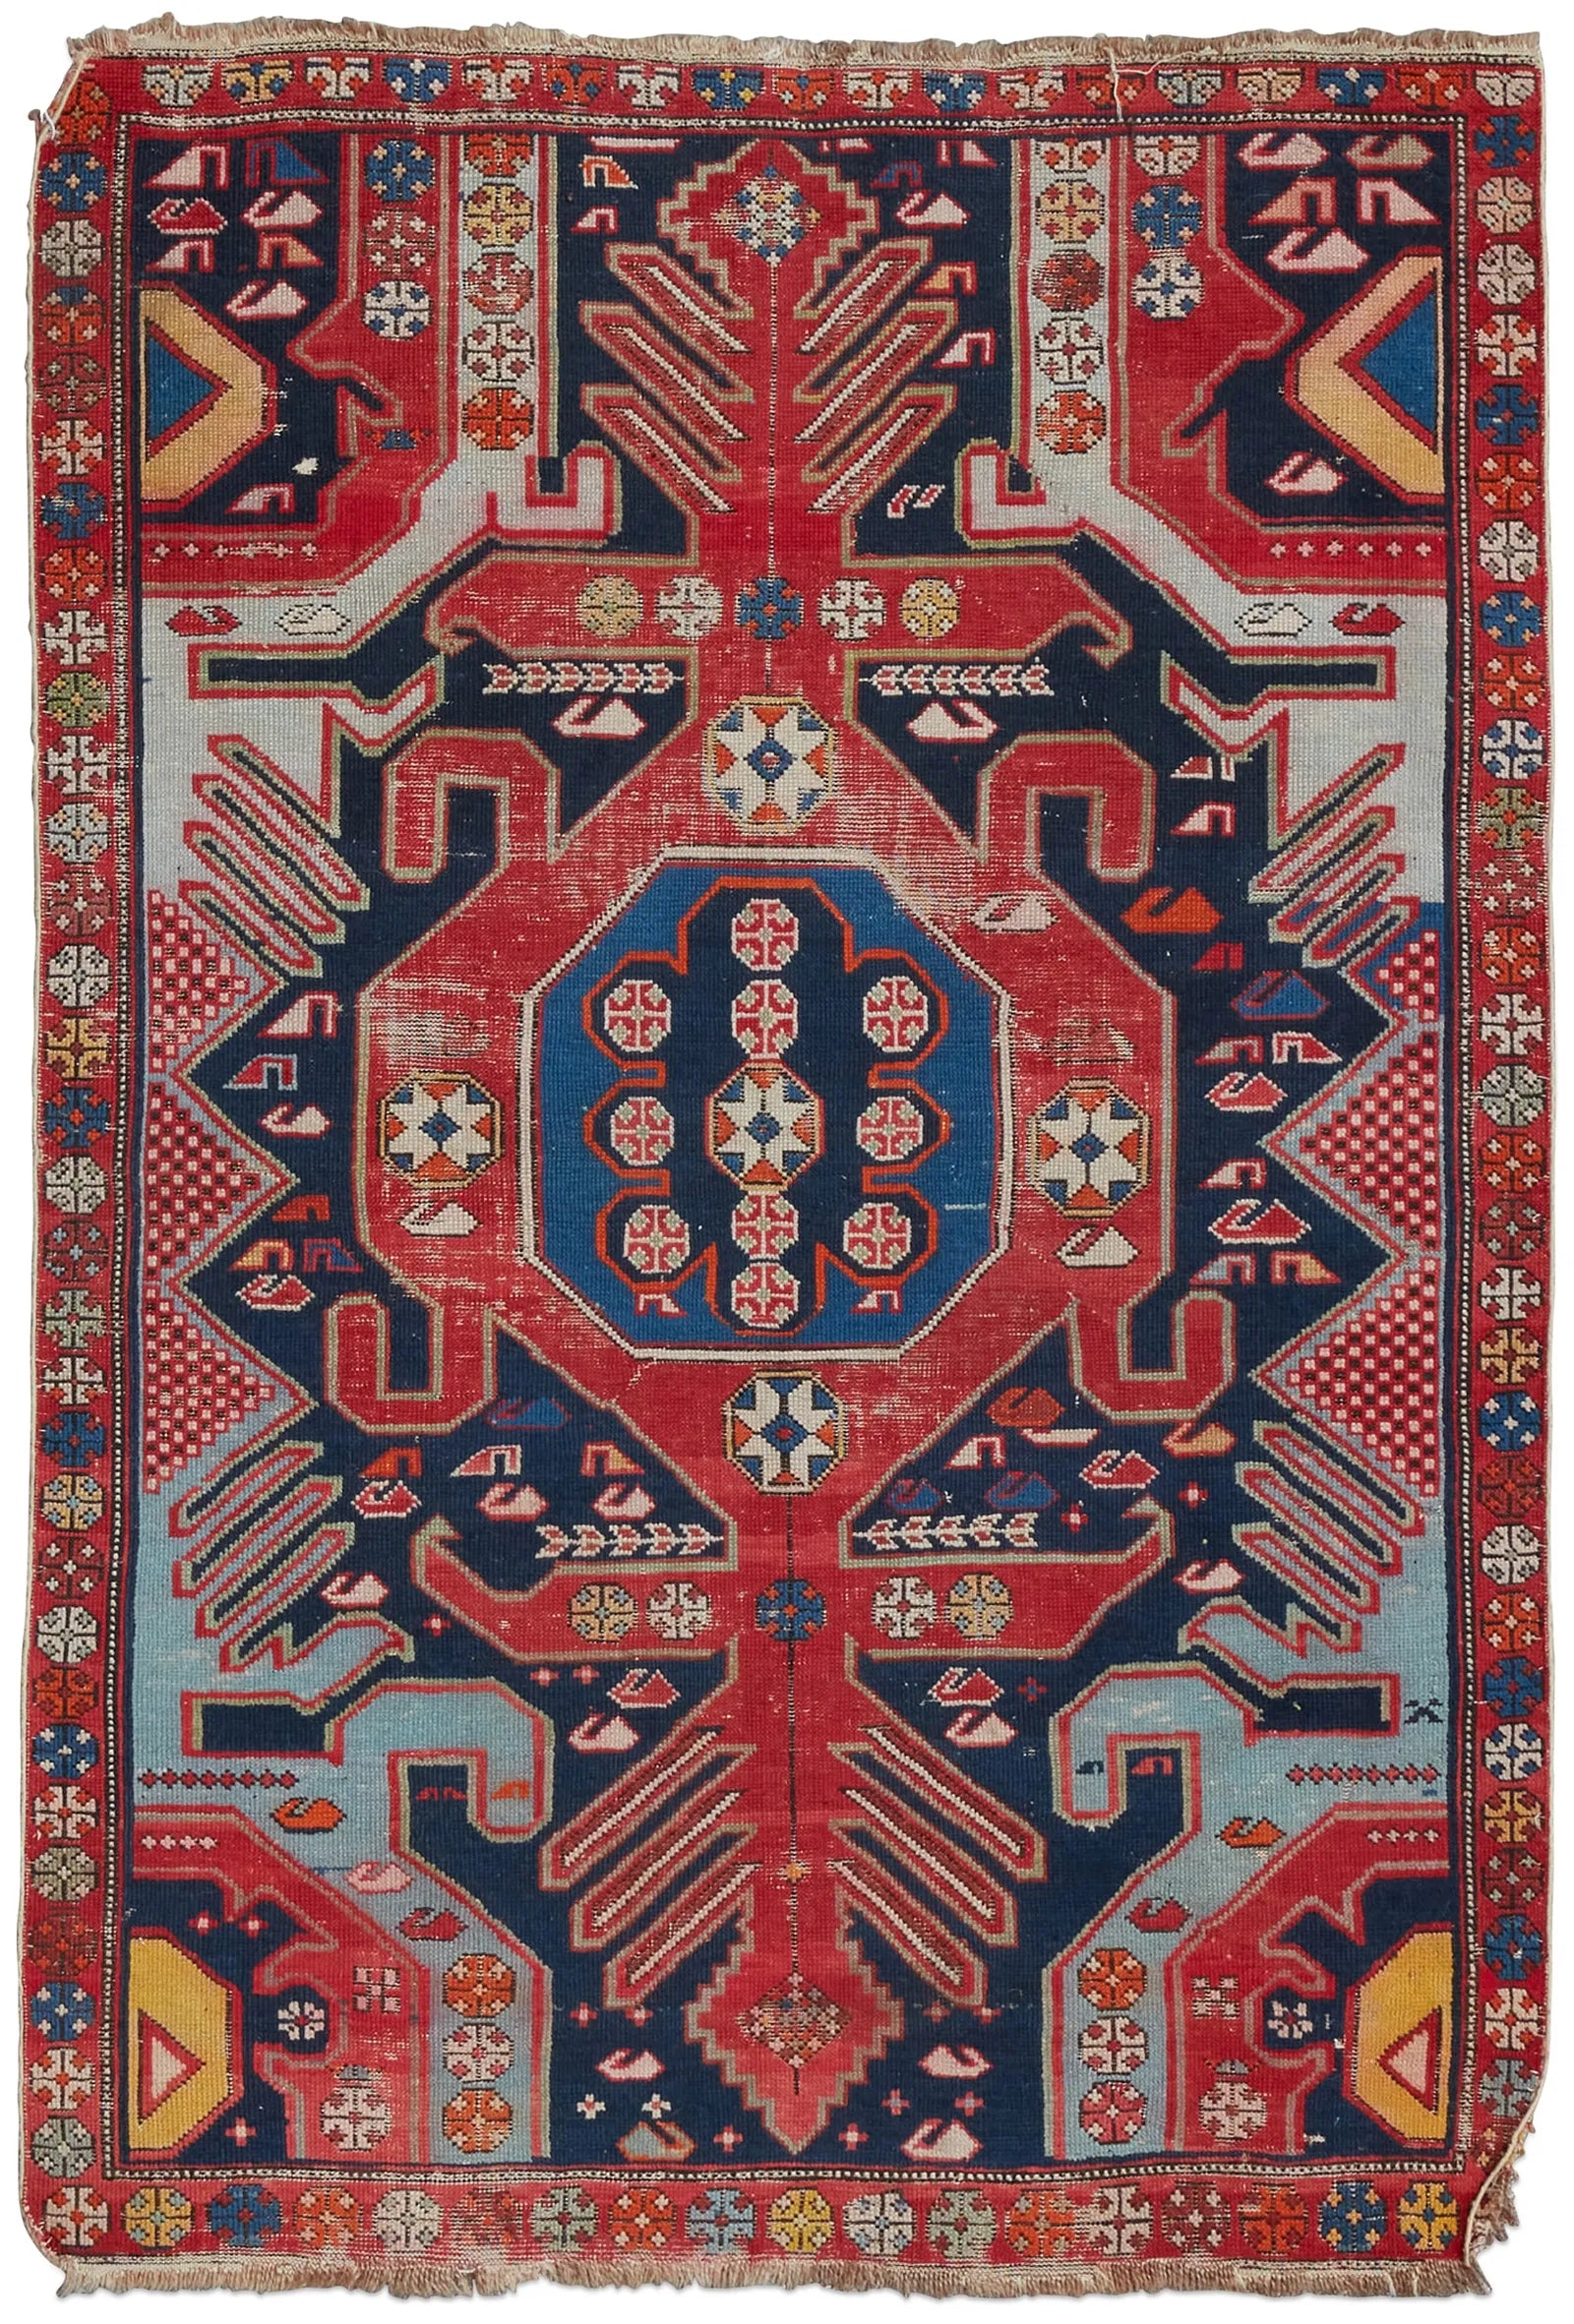 OR8-002: Antique Shriven Rug - East Caucasus - Circa 1900